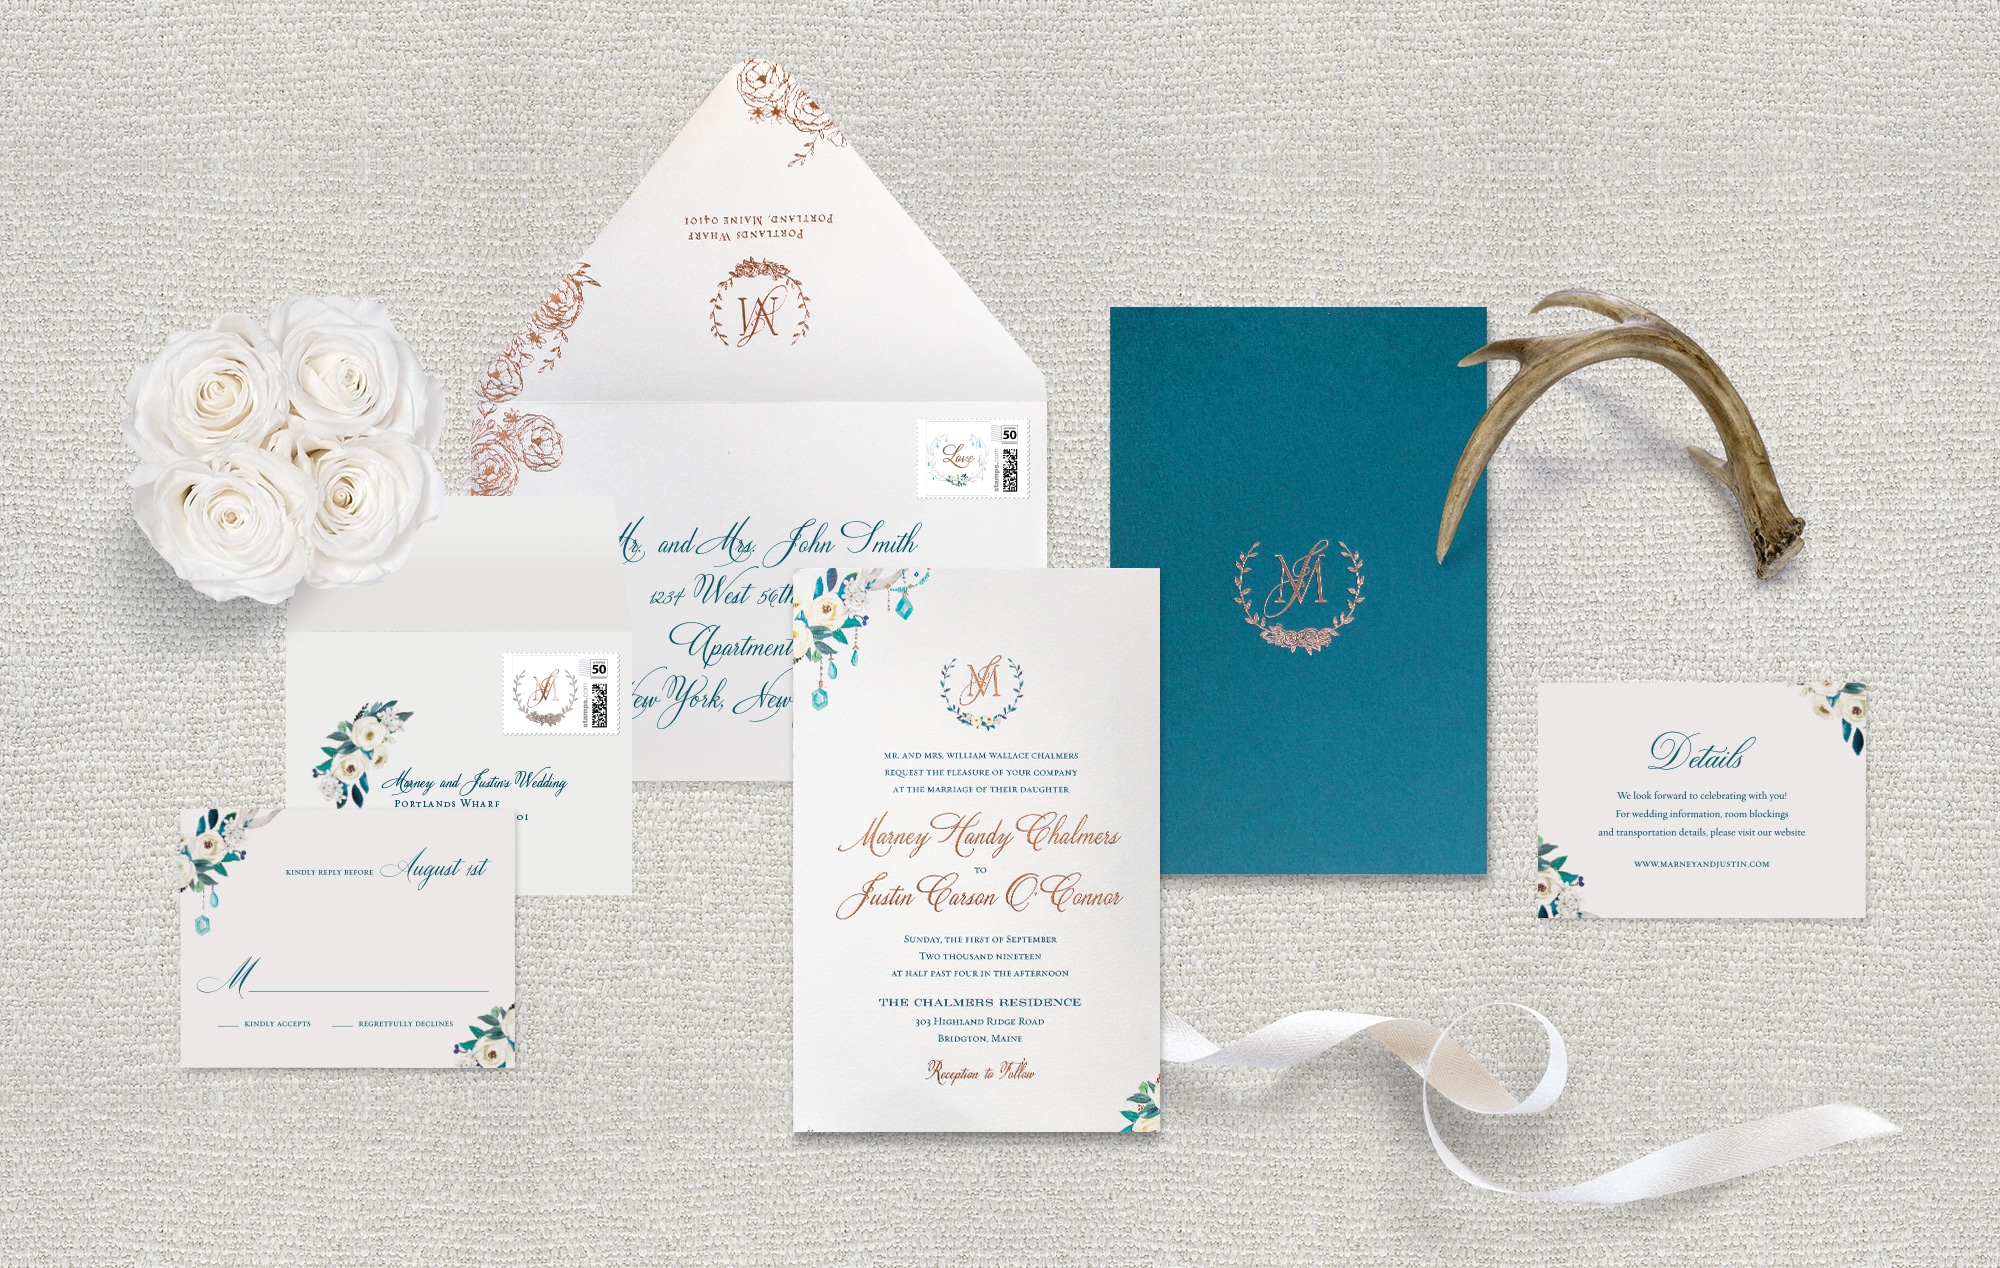 Rustic meets floral watercolor wedding invitation